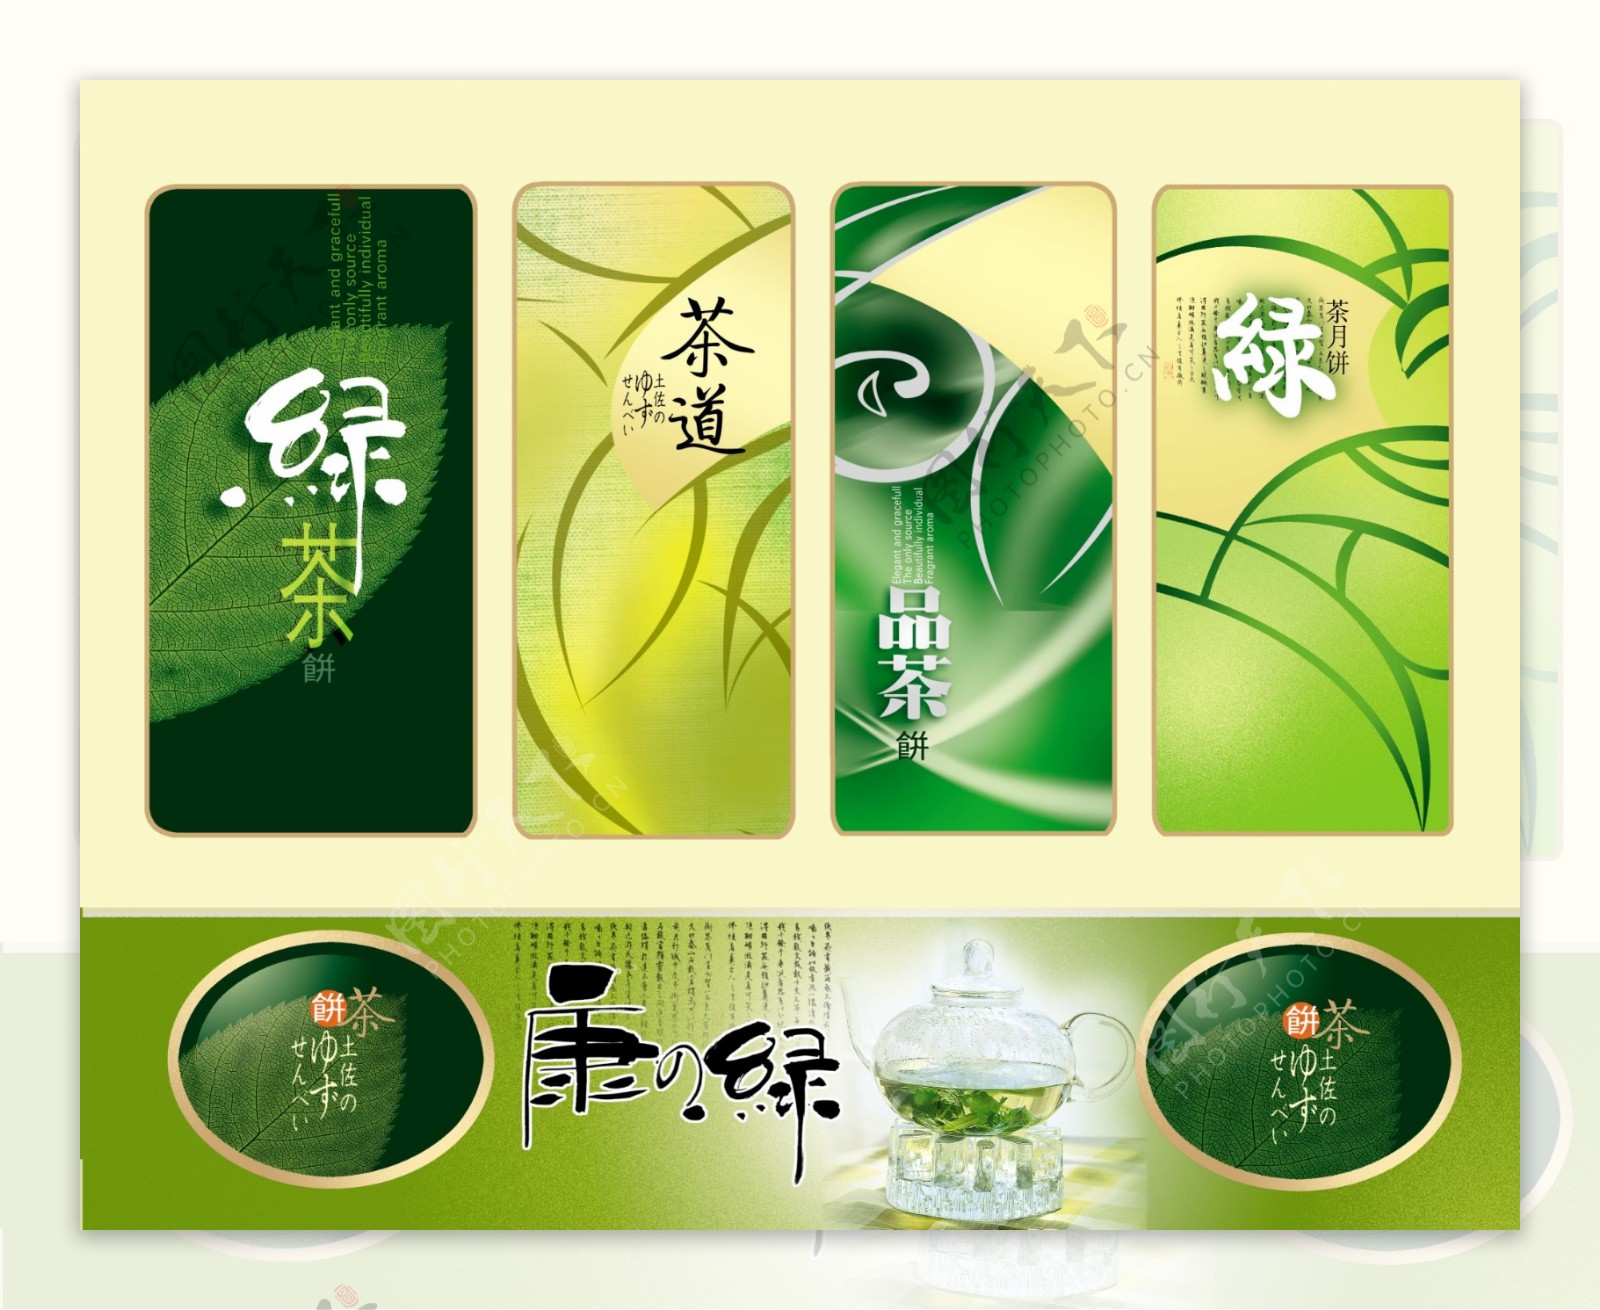 绿茶外包装设计PSD素材